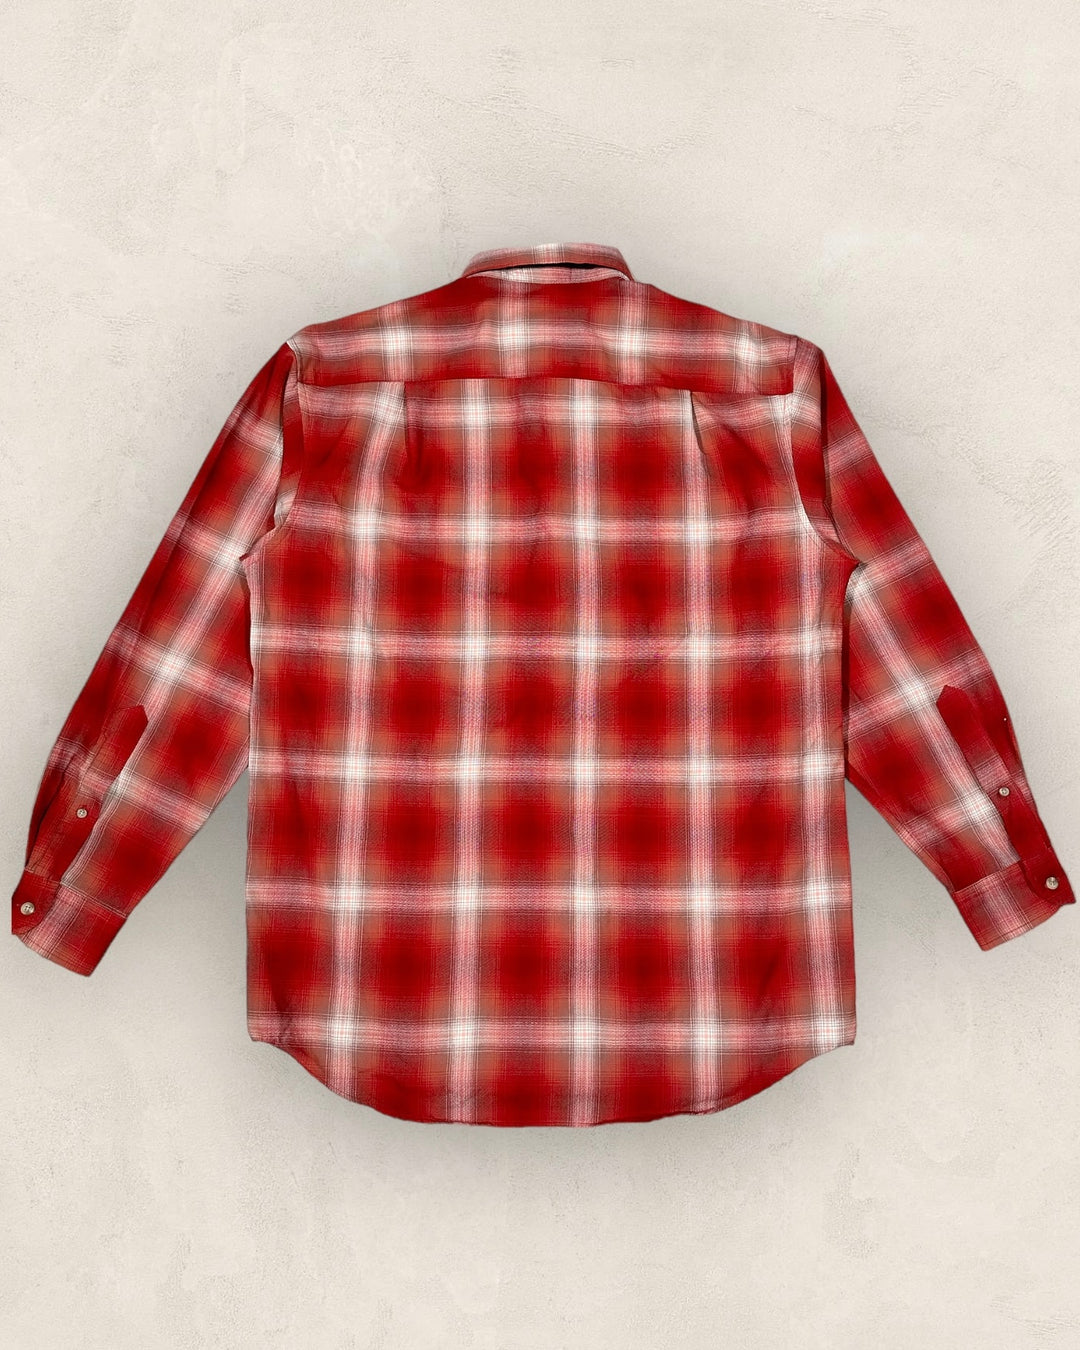 Pendleton wool shirt - Size L/XL